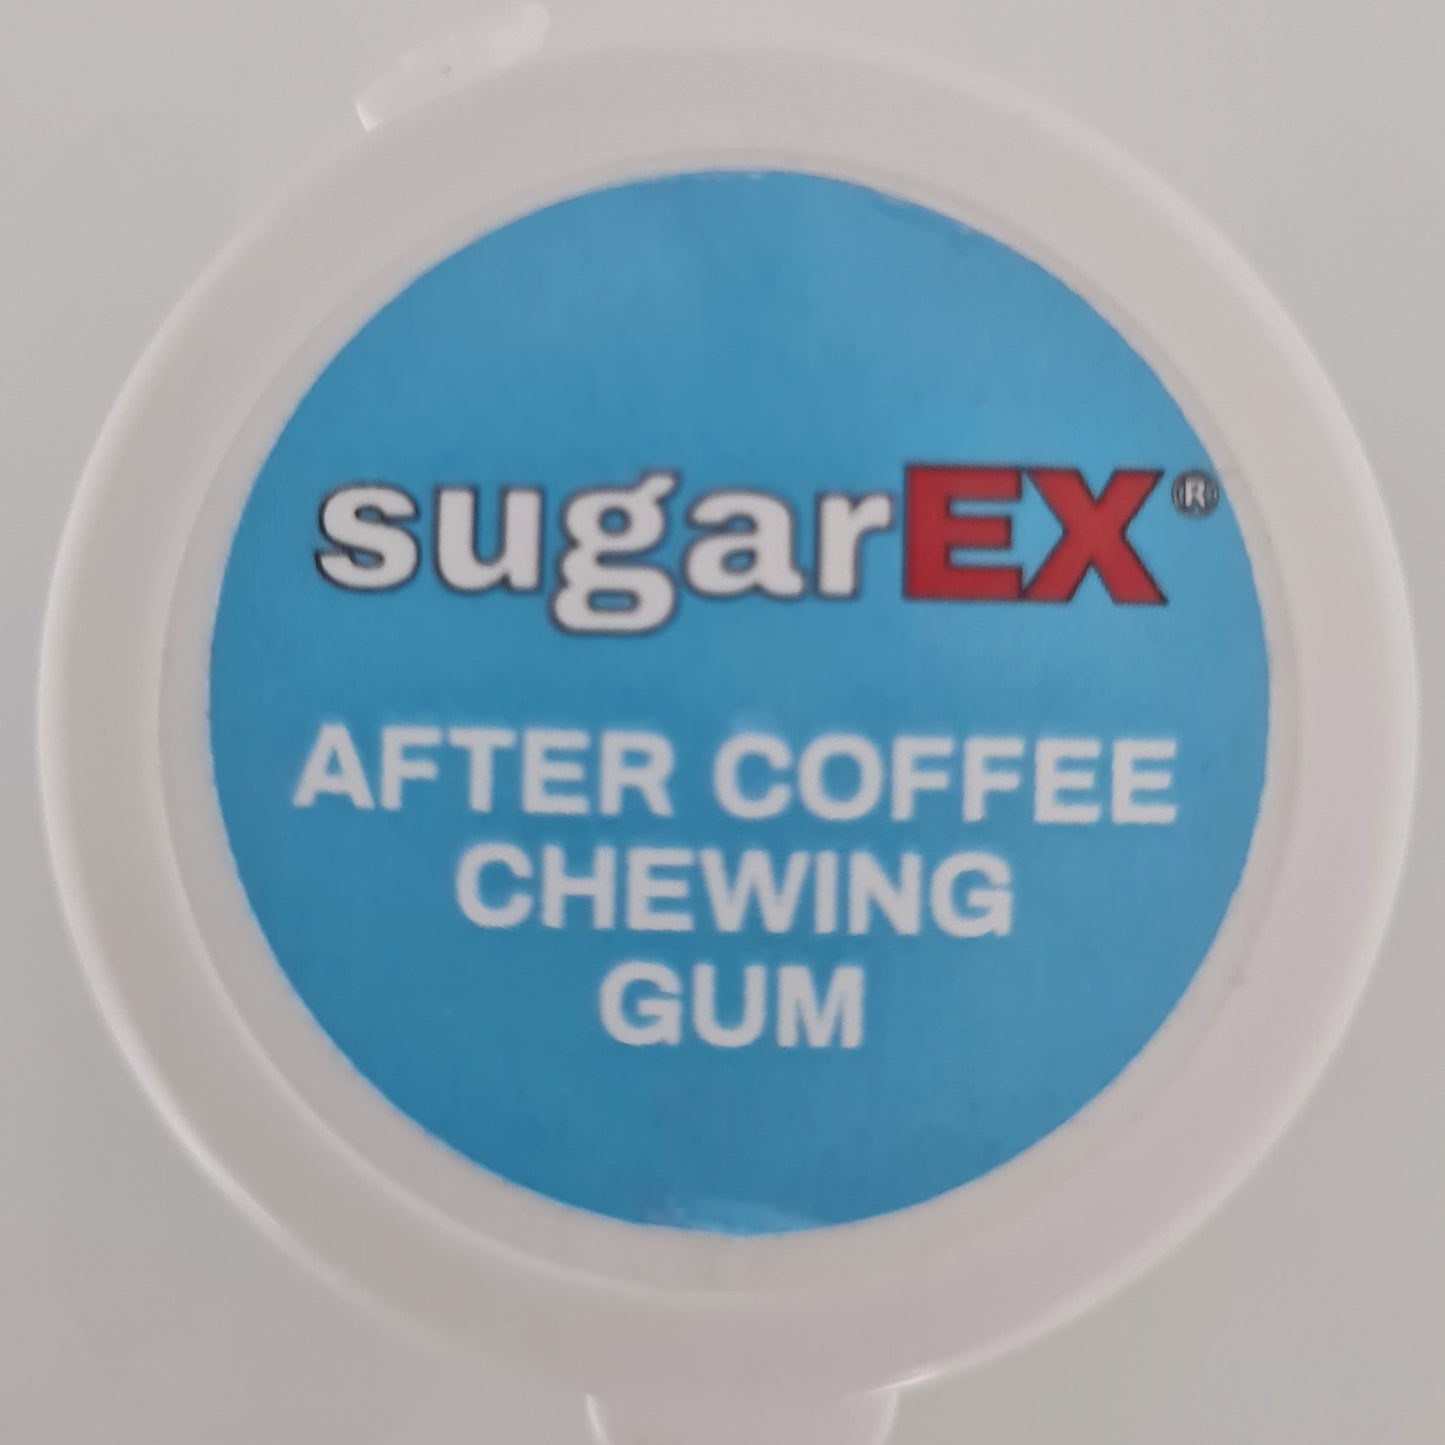 sugarEX After Coffee Chewing Gum Mint (70g je Dose) - sugarfree - Verkauf im Set zu 5 Dosen